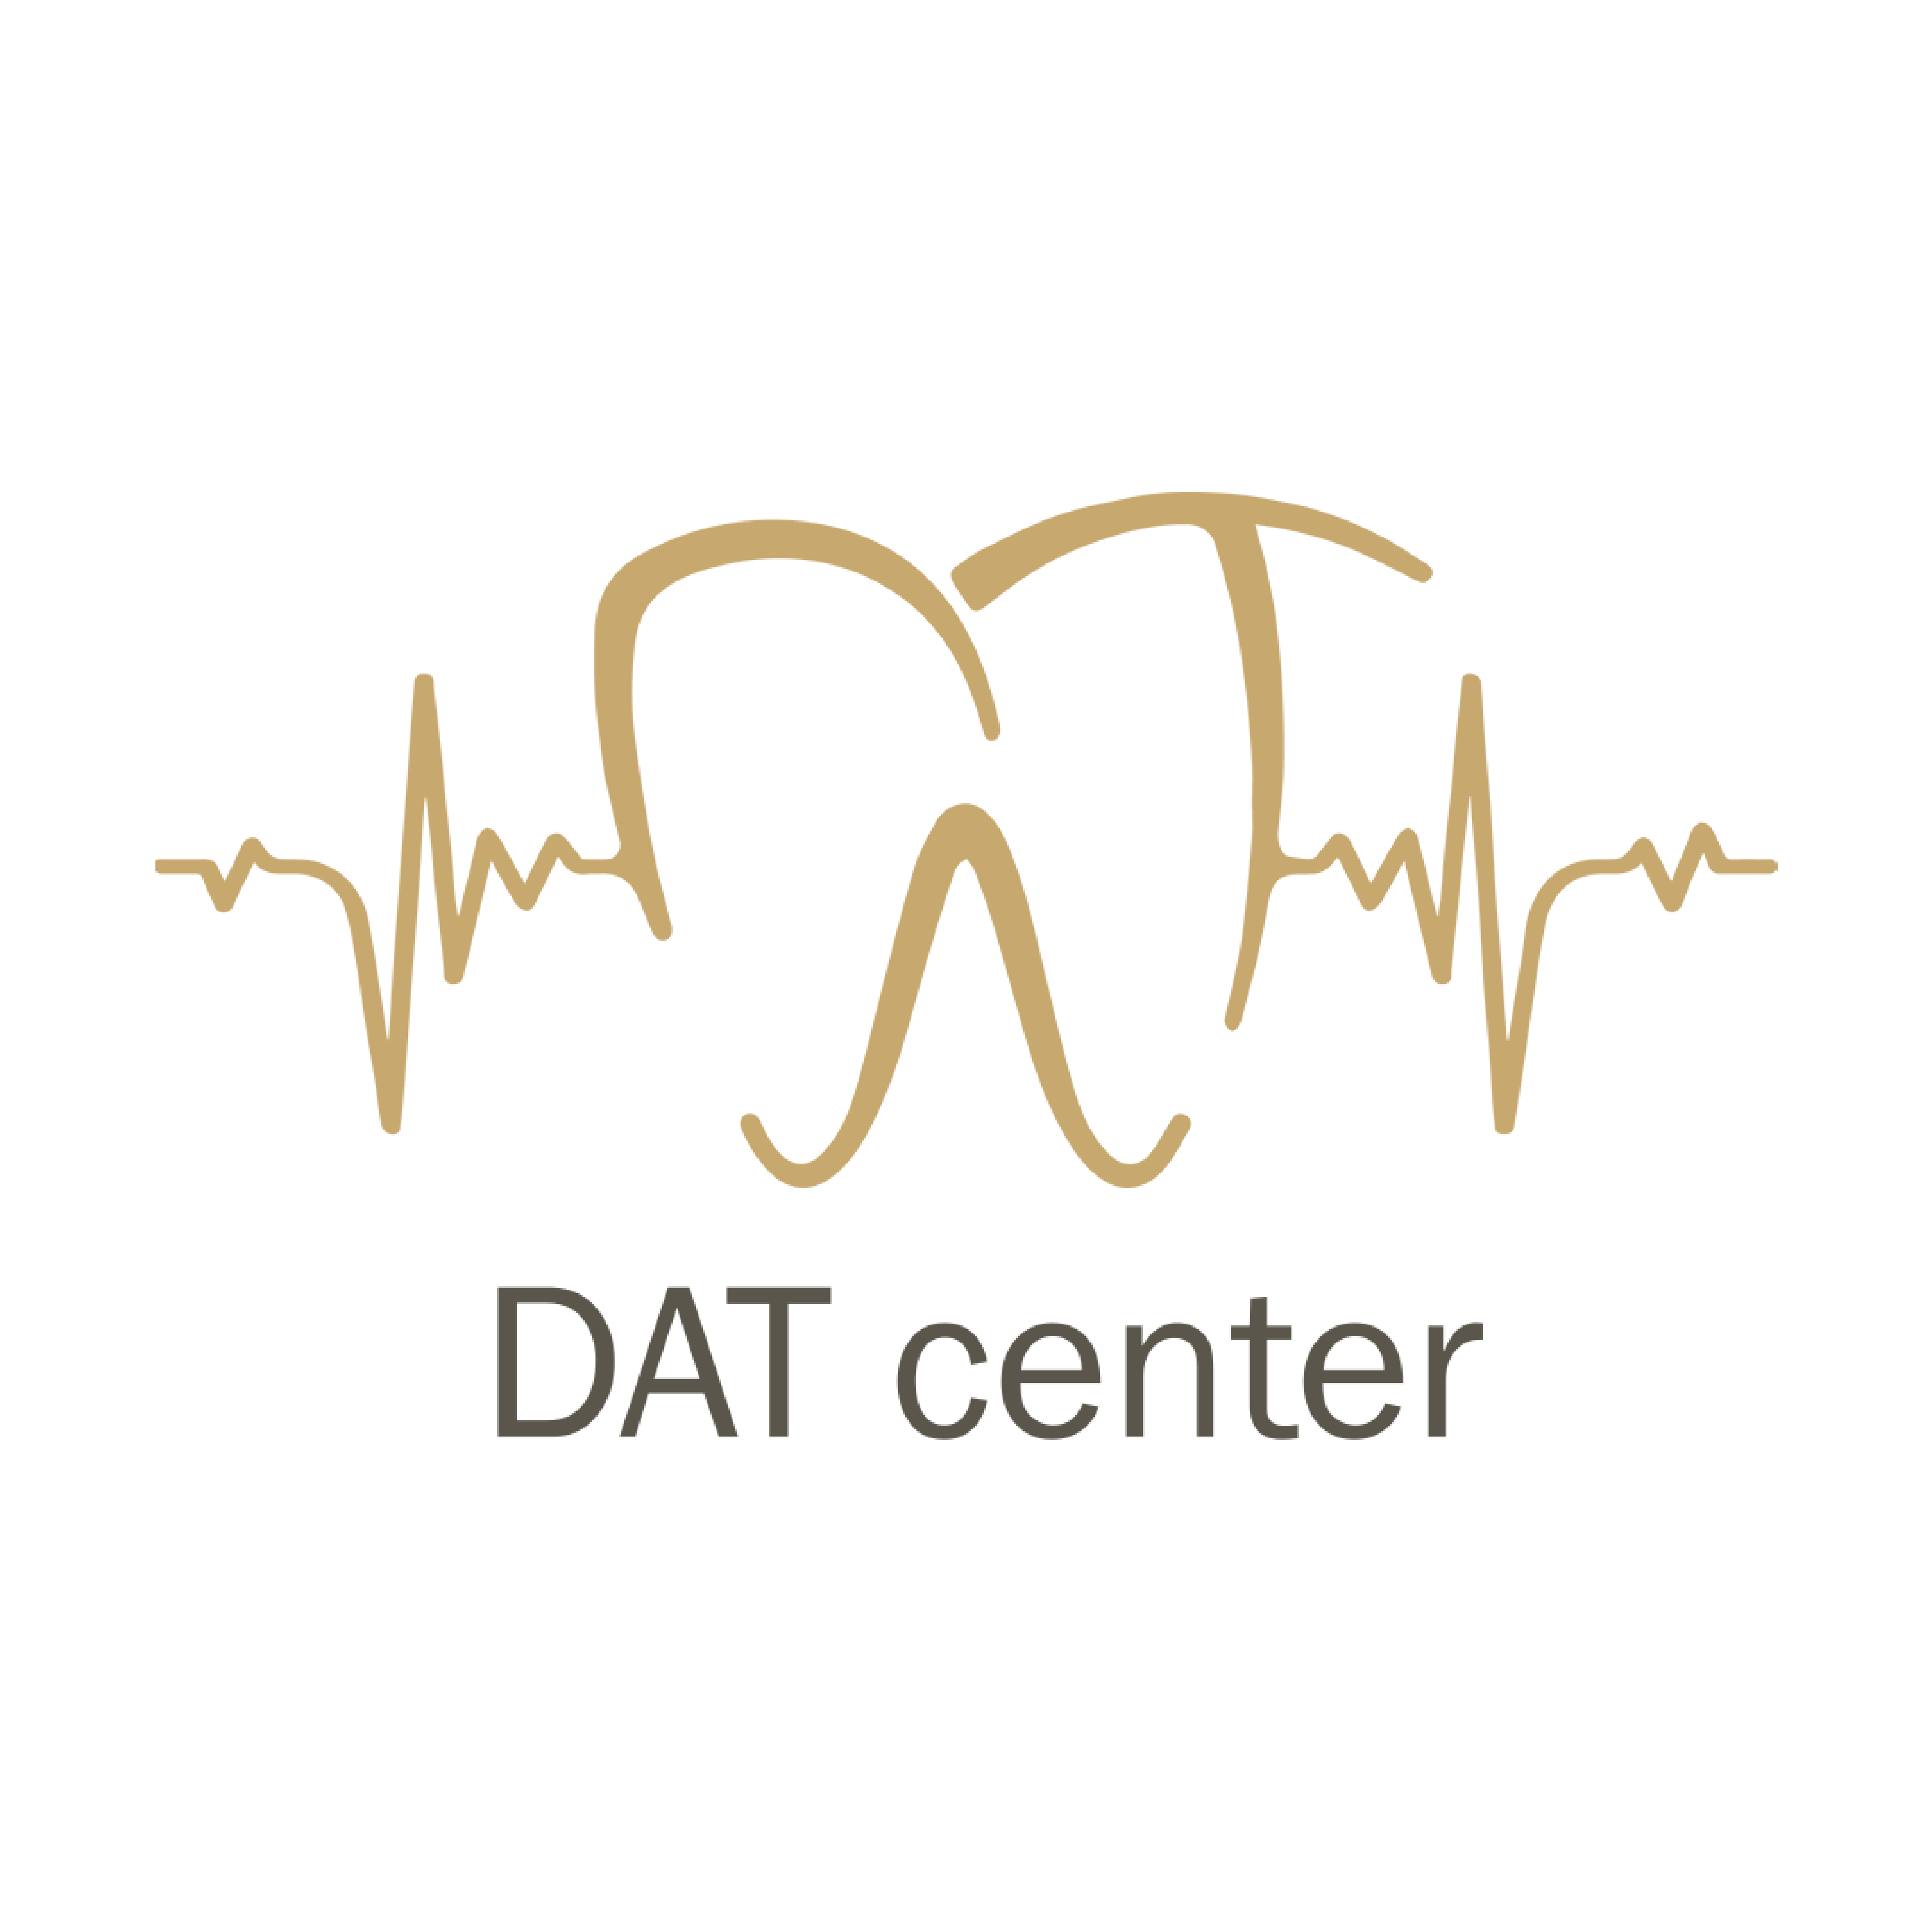 DAT Center